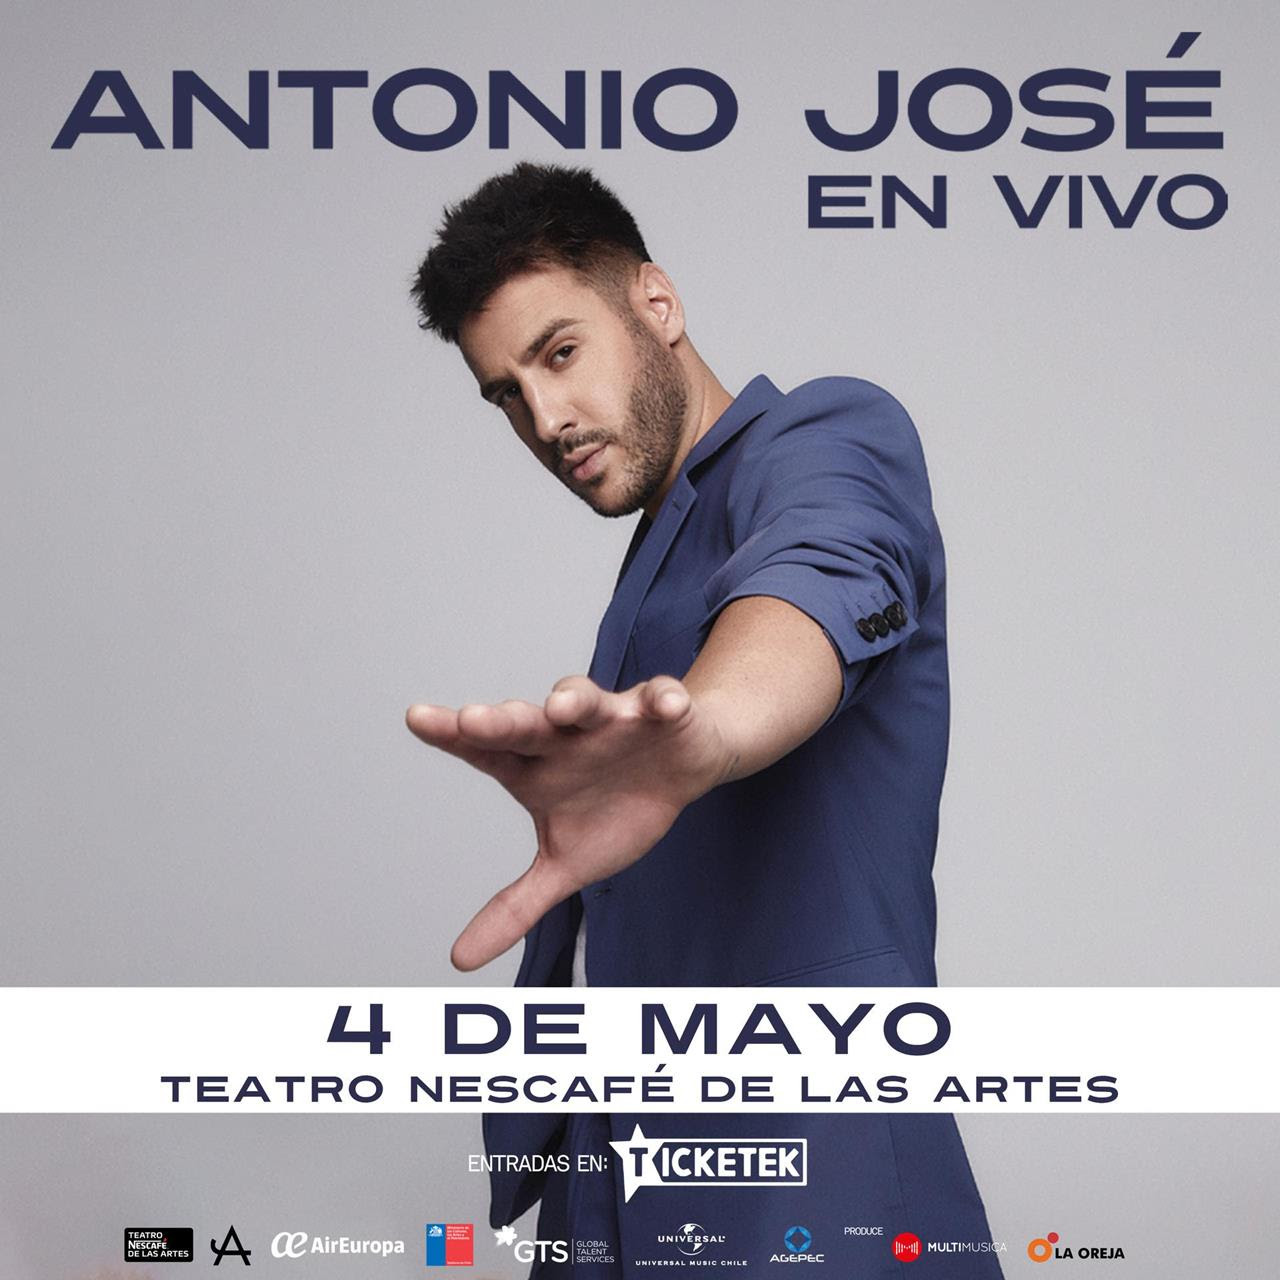 Antonio José agenda concierto en Chile